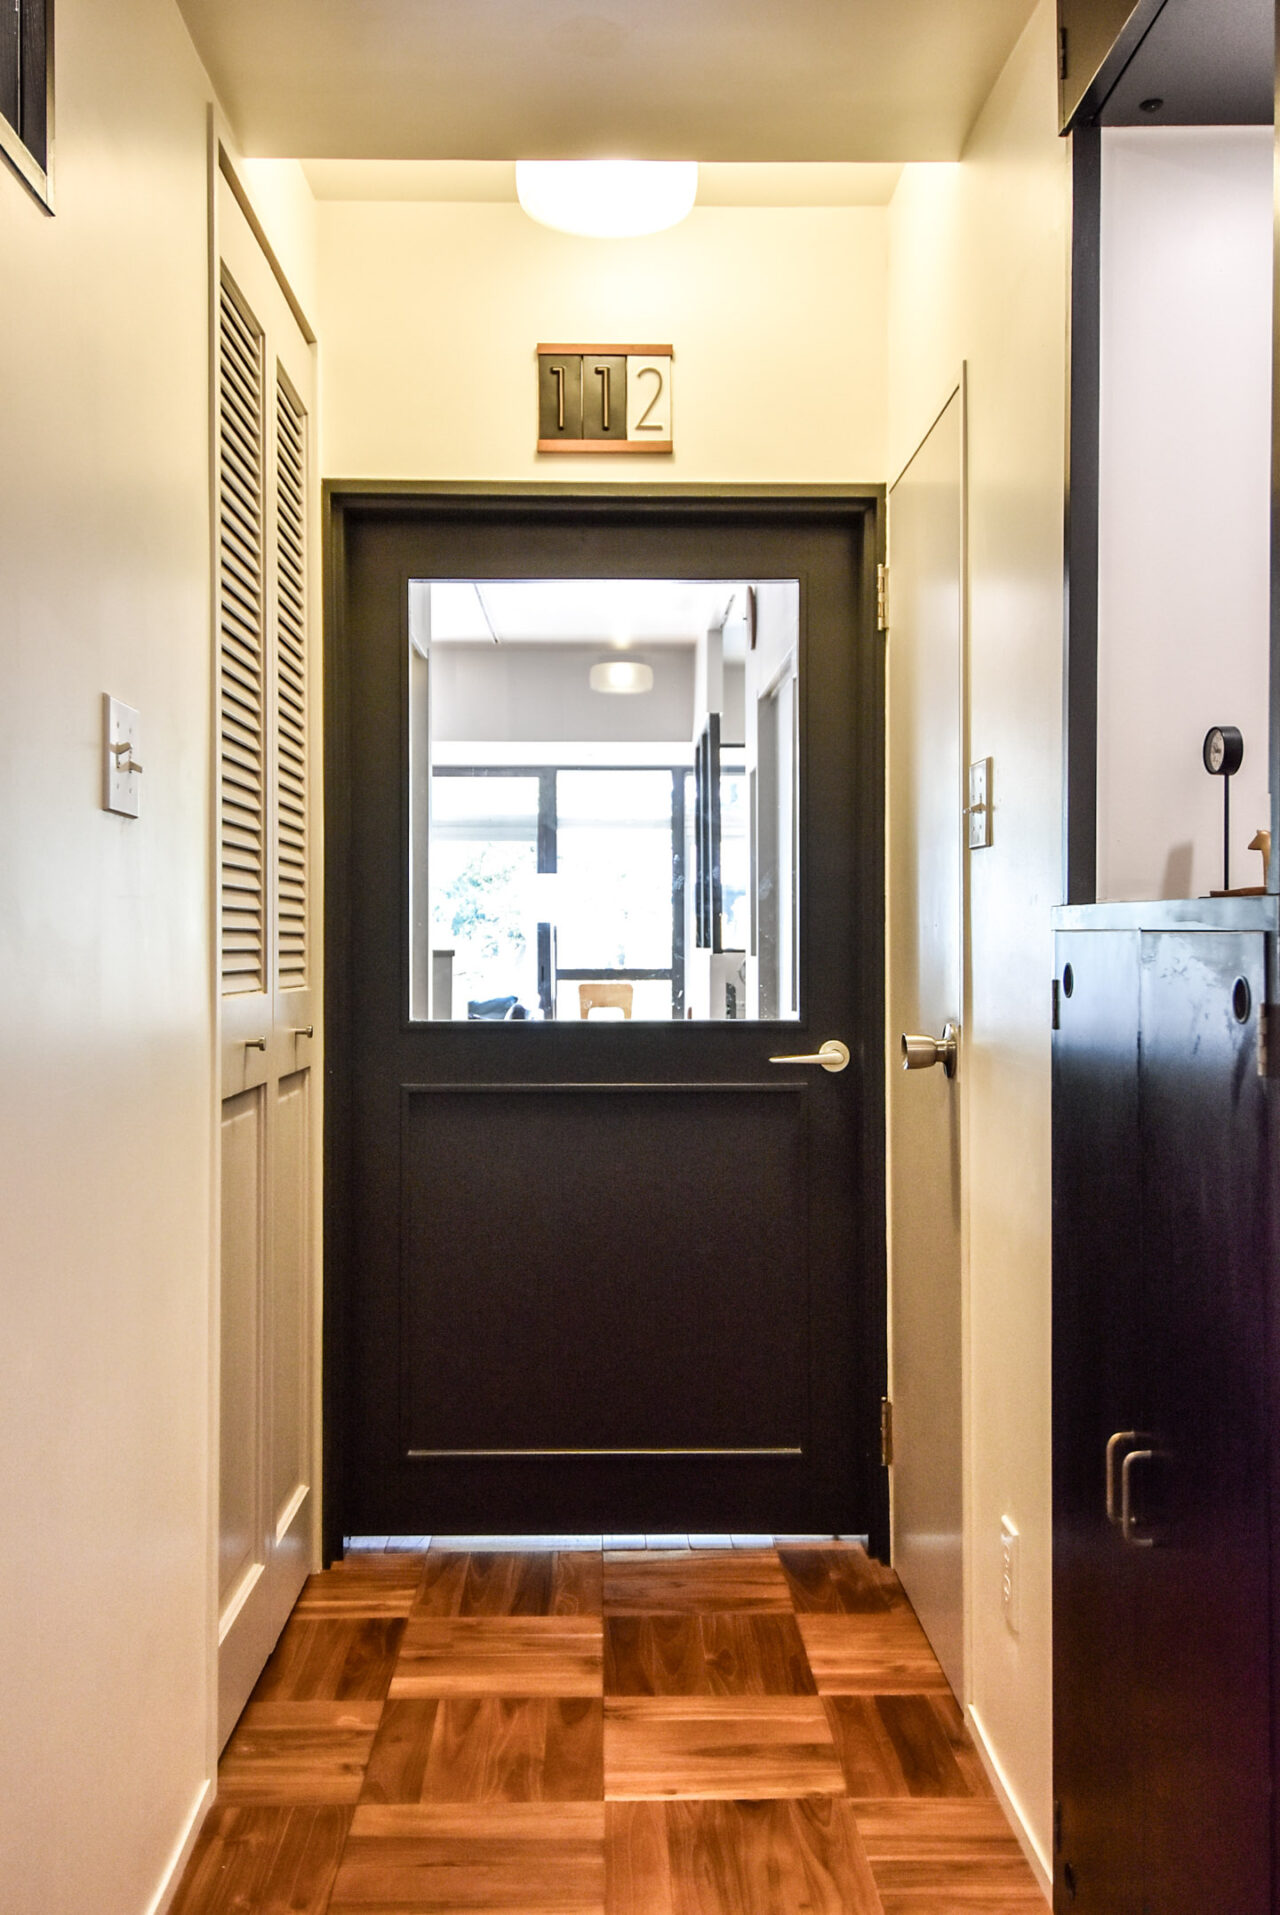 部屋番号112の表示がある、明るく清潔な廊下に位置する黒いドア。ドアの窓からは、室内が一部見えています。